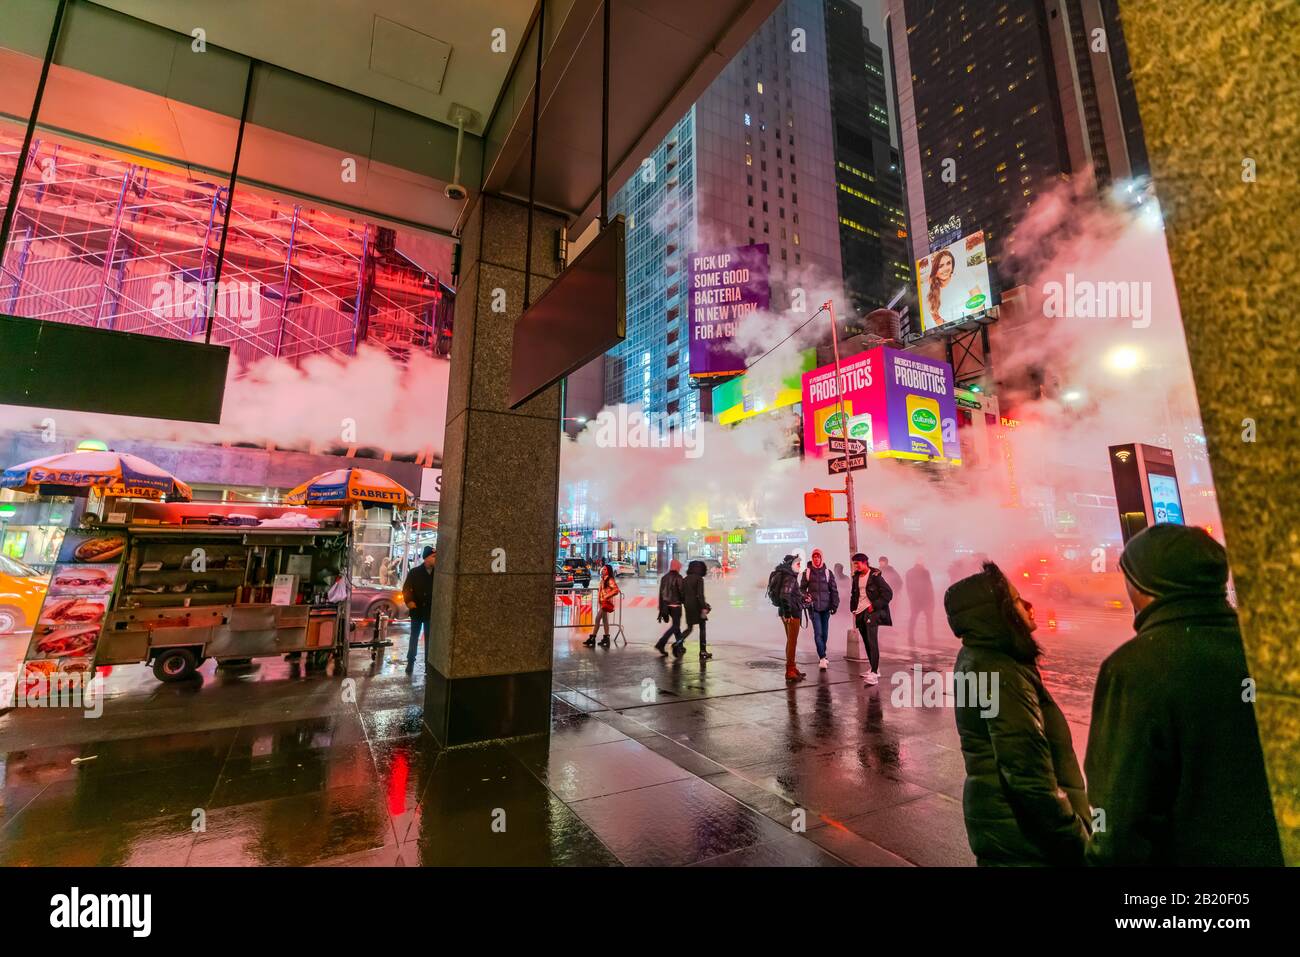 Il vapore che deriva circonda la gente, il traffico e gli edifici Di Times Square nella notte innevata al centro di Manhattan New York City NY USA il Gennaio 2020. Foto Stock